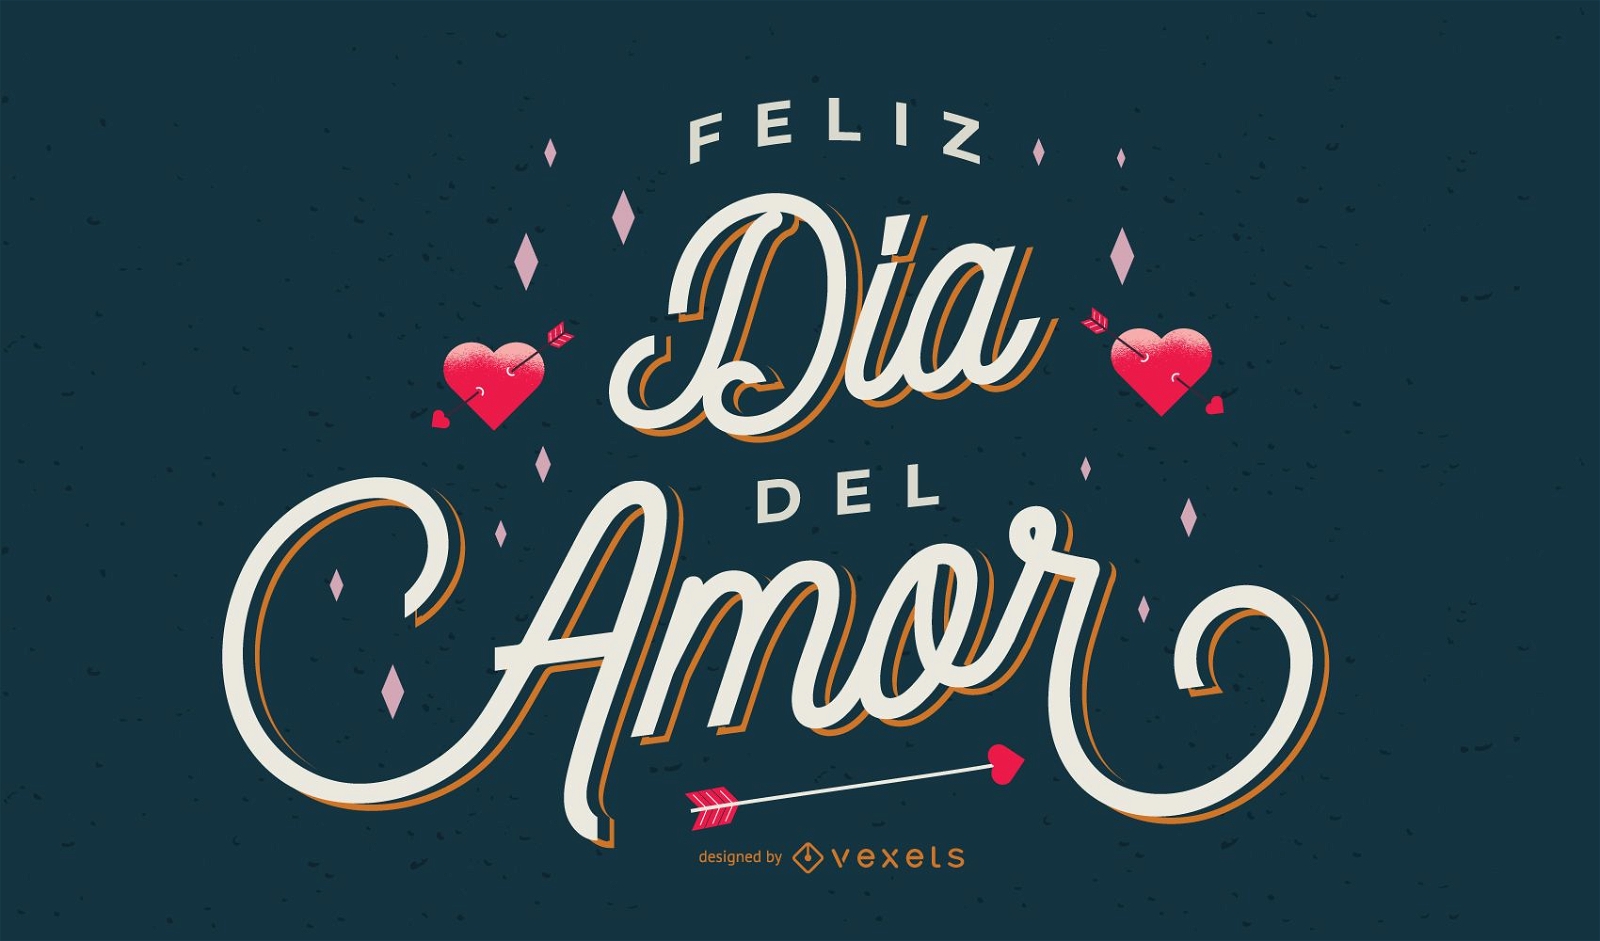 Desenho de letras em espanhol do dia dos namorados